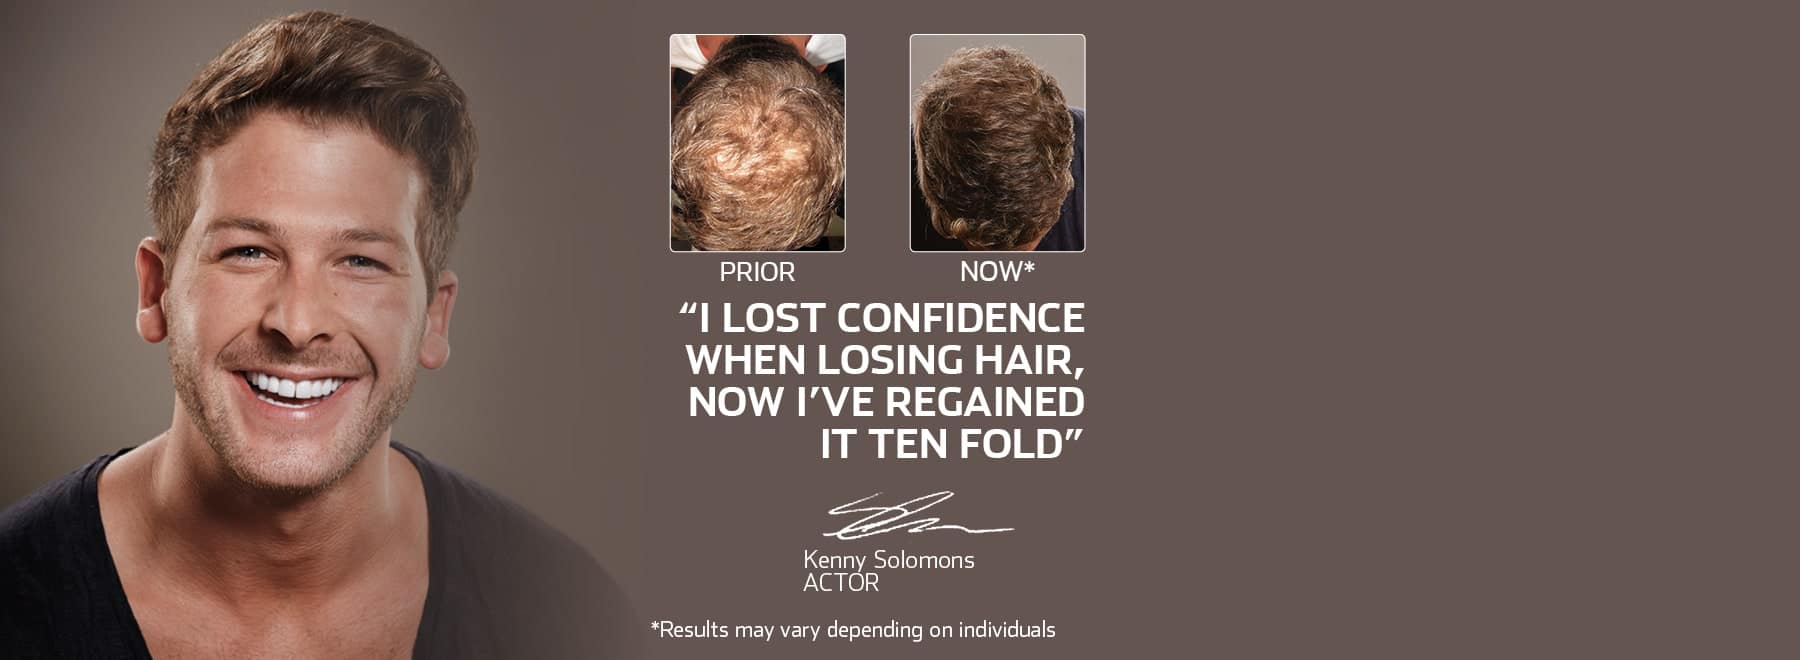 Hair Loss & Growth Treatment South Africa - Advanced Hair Studio